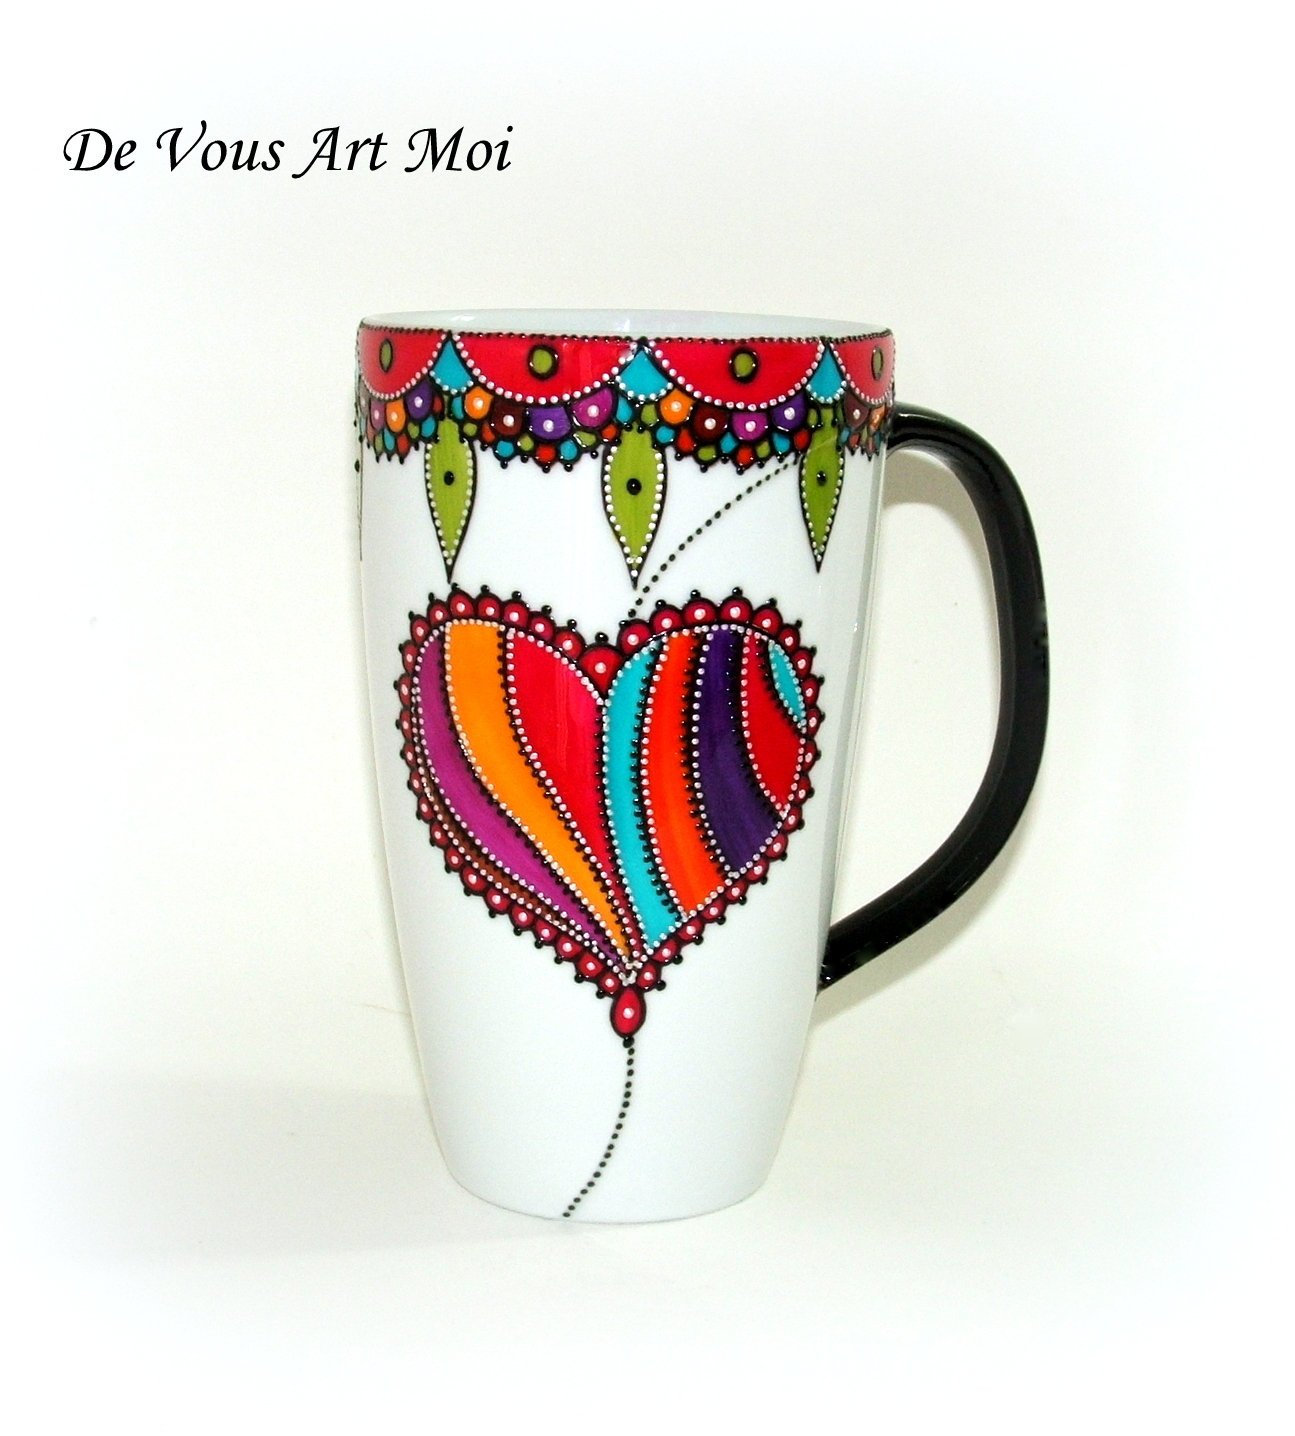 Mug tasse XXL,peint main,grande tasse coeur,mug 60cl jumbo,mug